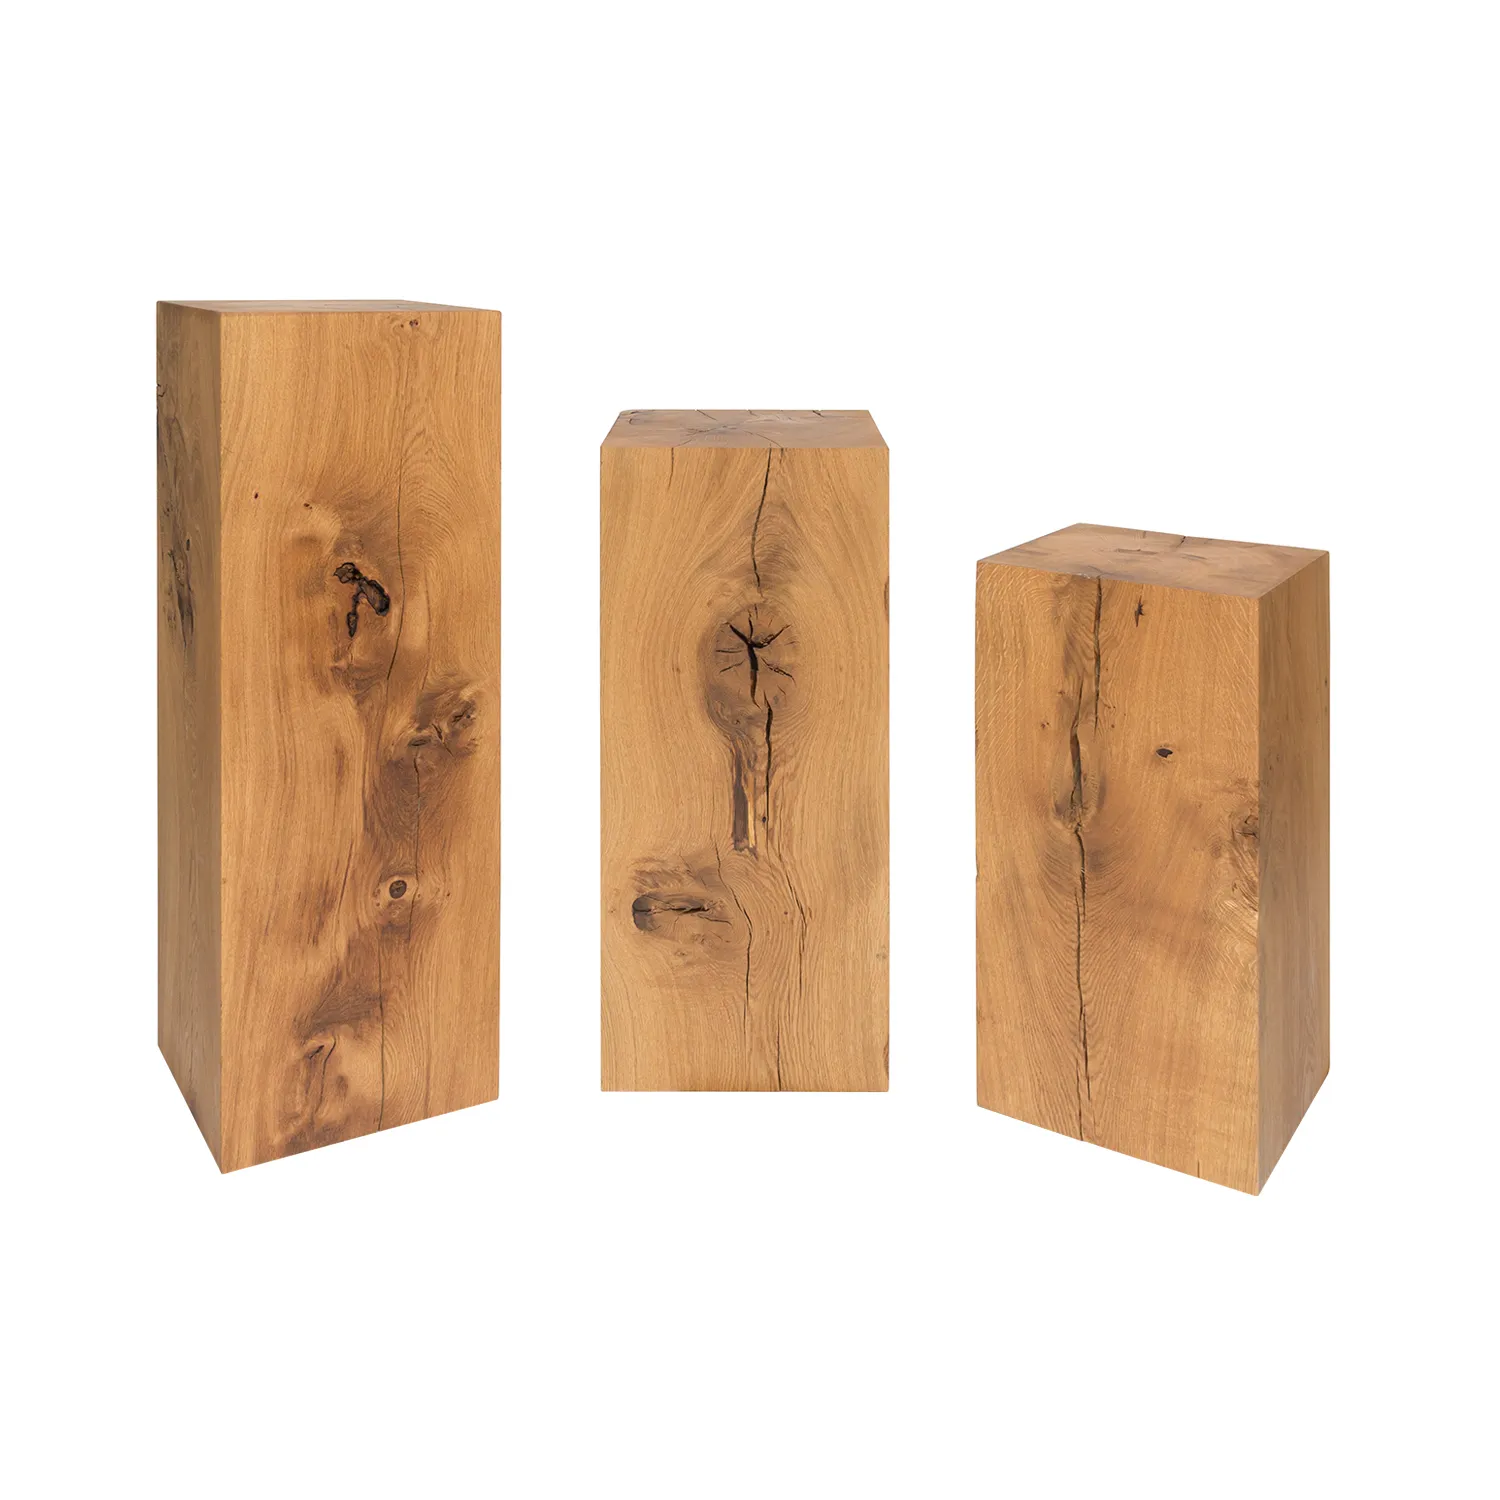 Holzblöcke aus Eiche in drei verschiedenen Höhen